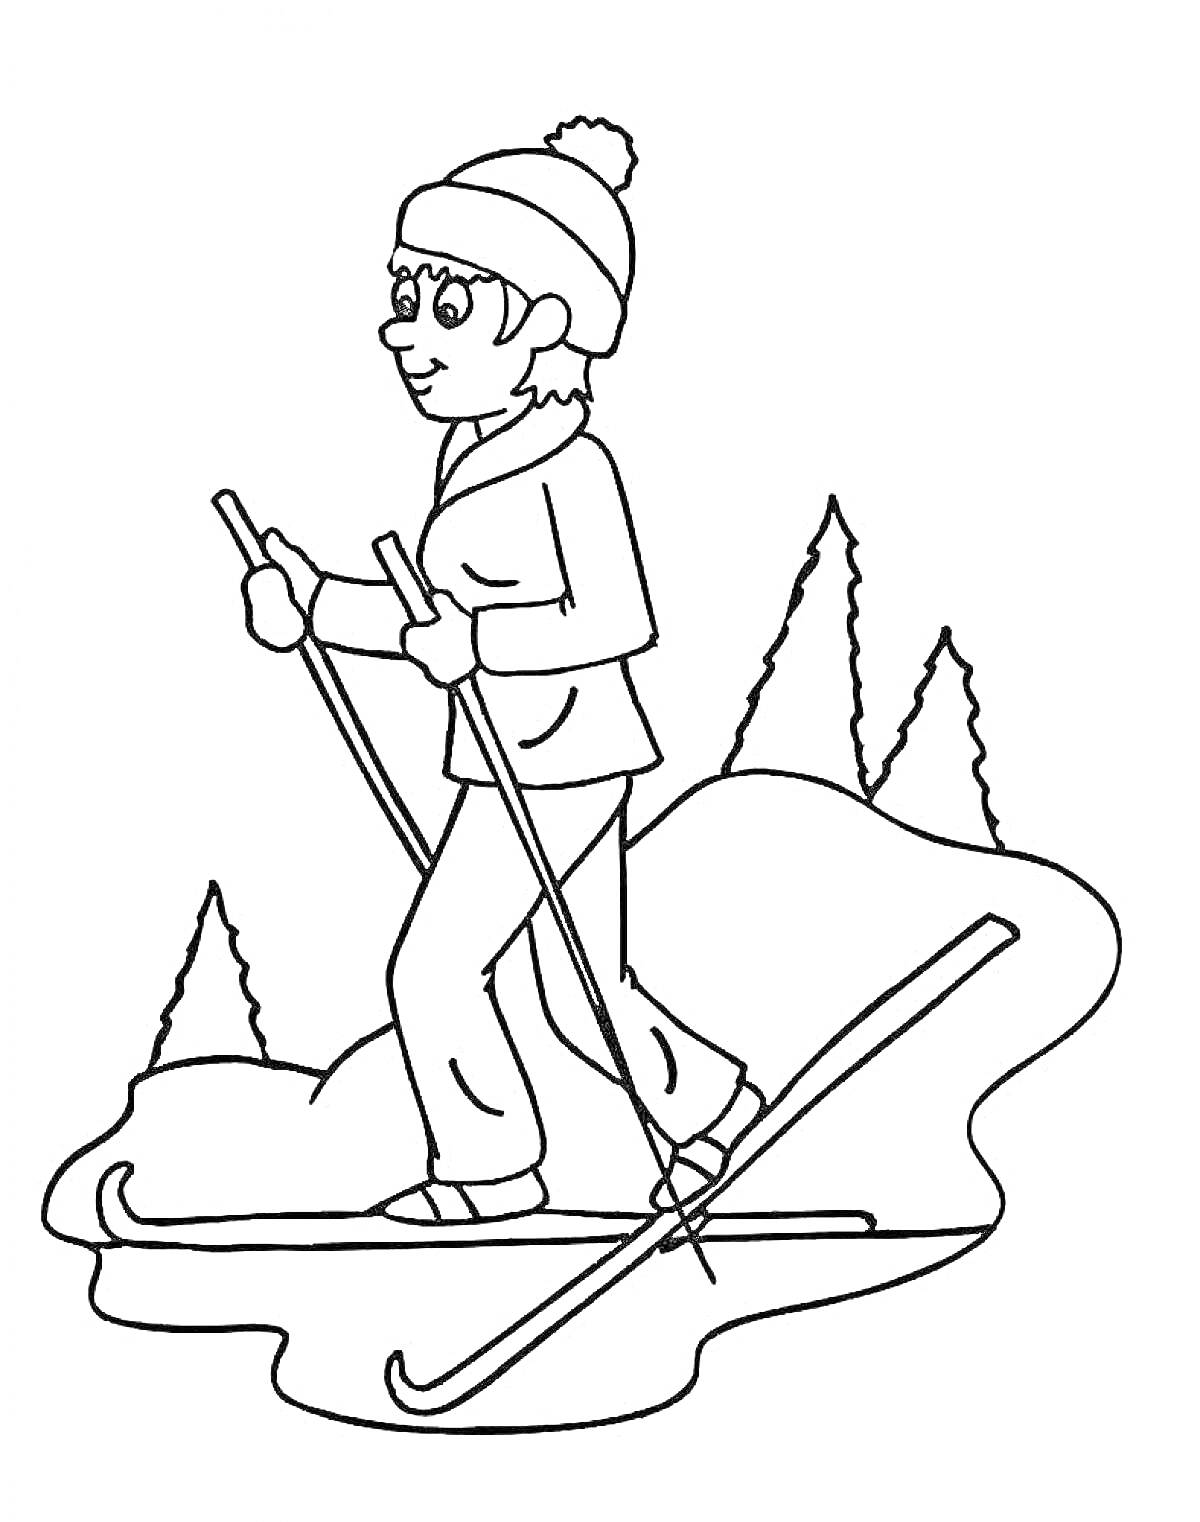 Раскраска Лыжник, катящийся по склону на лыжах, с лыжными палками, на фоне деревьев.